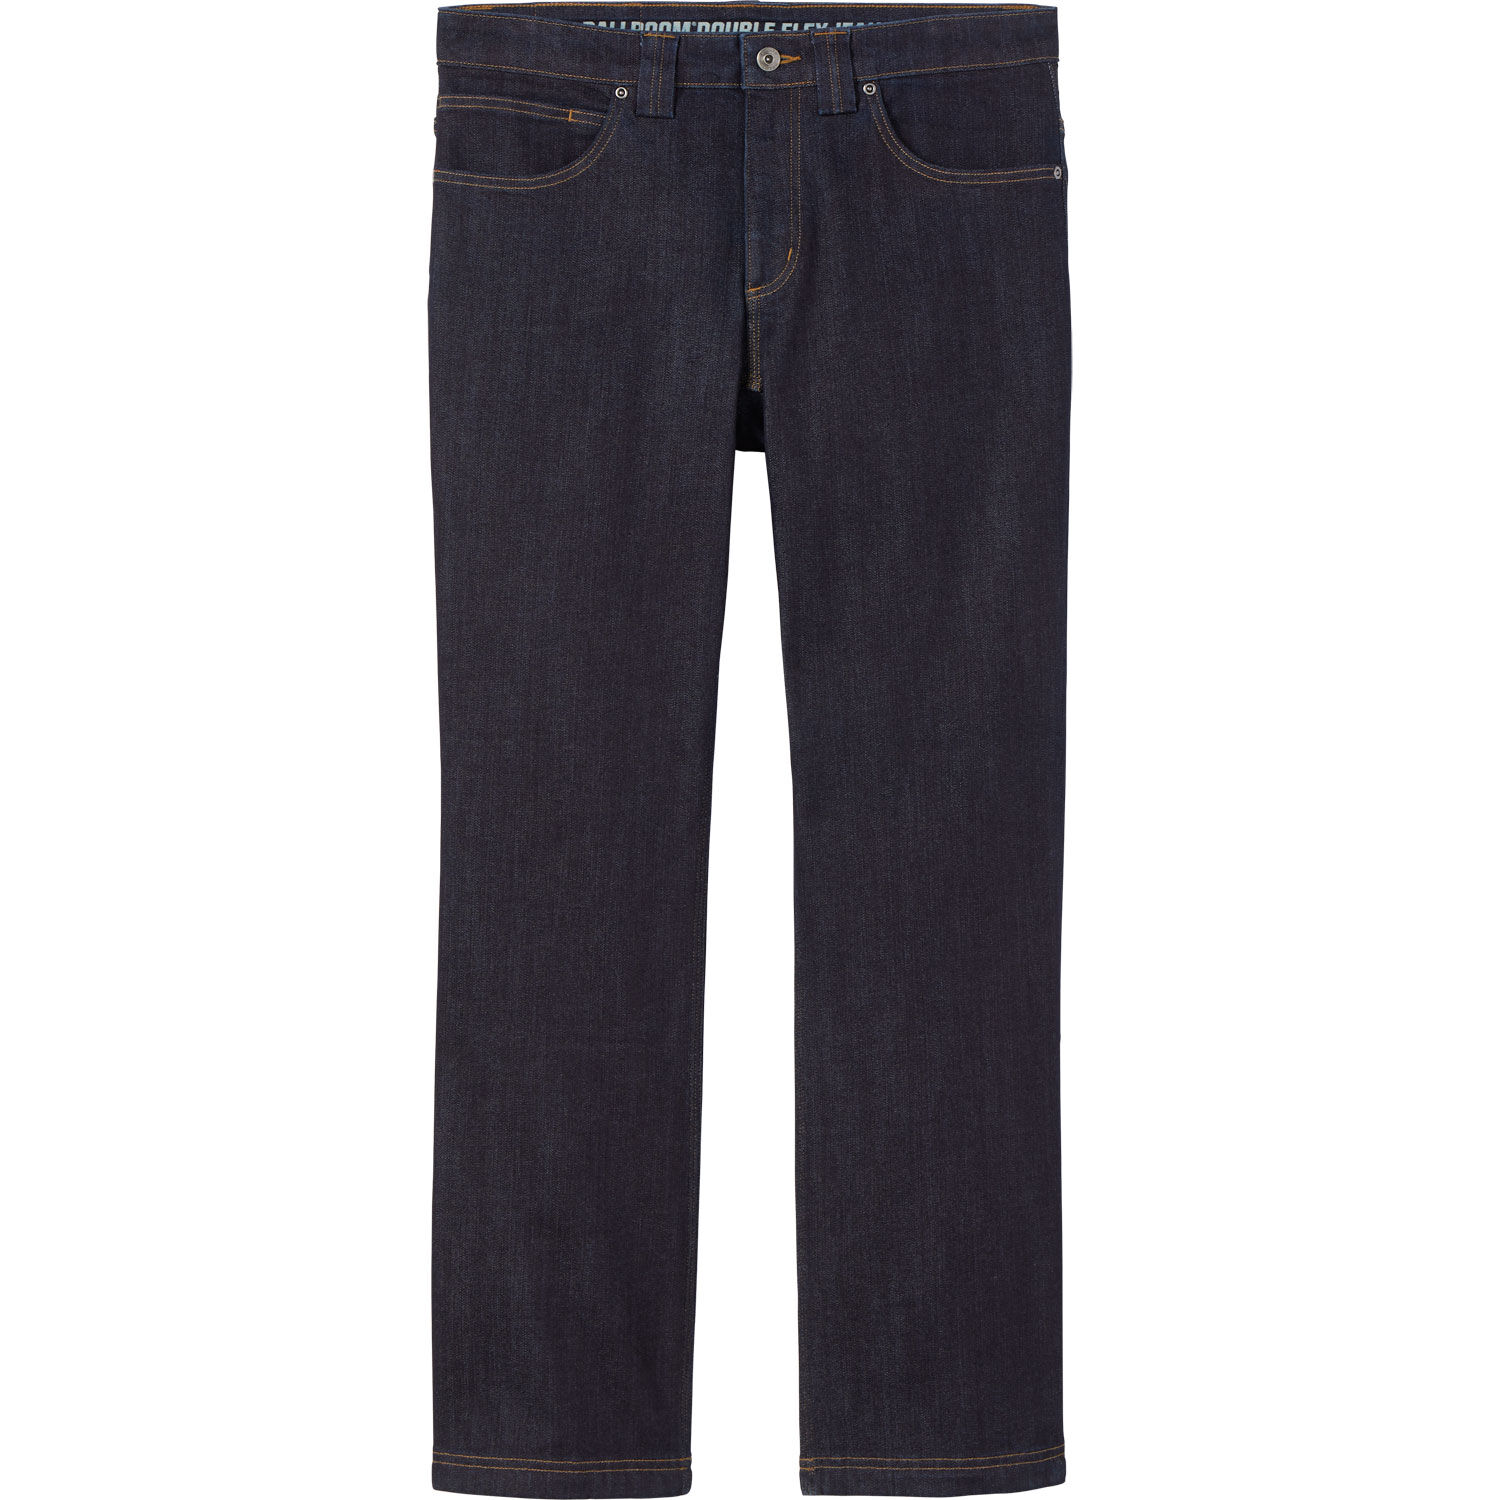 Buy Black Jeans for Men by Paris Hamilton Online | Ajio.com